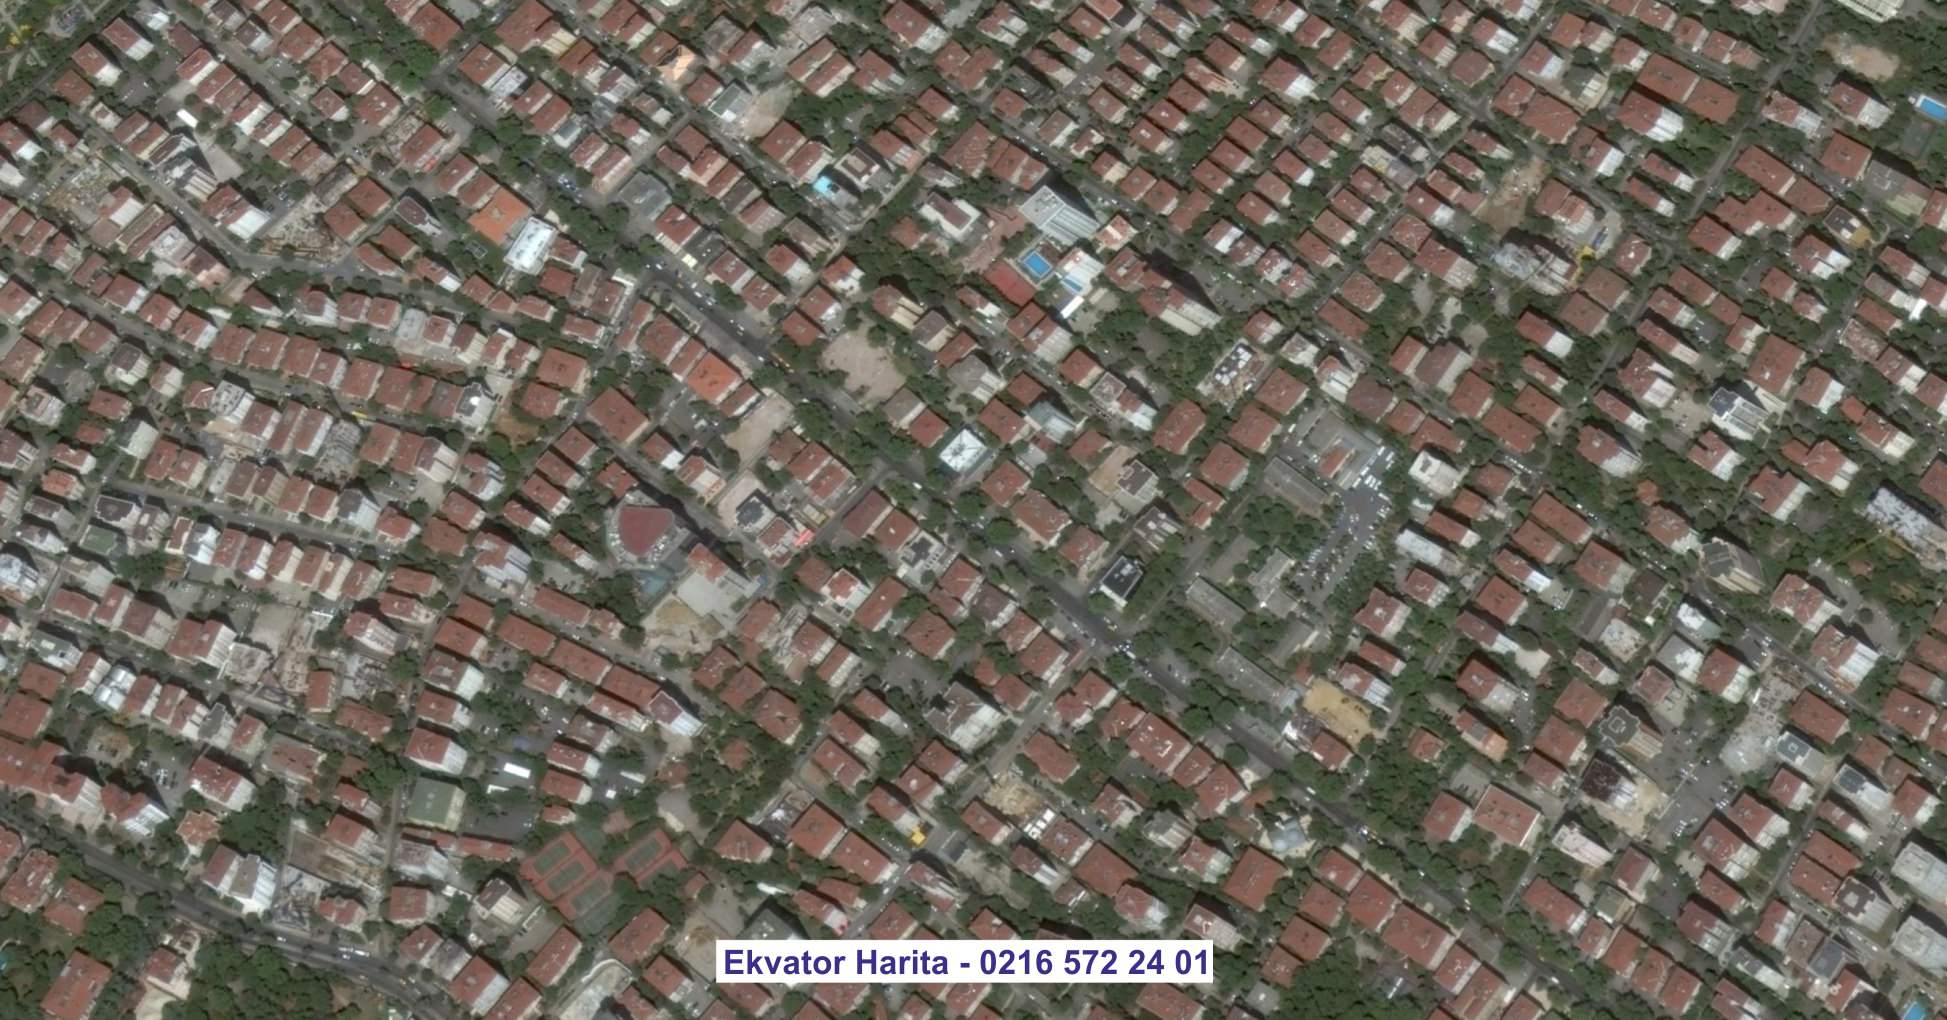 Medine Uydu Görüntüsü Örnek Fotoğrafı